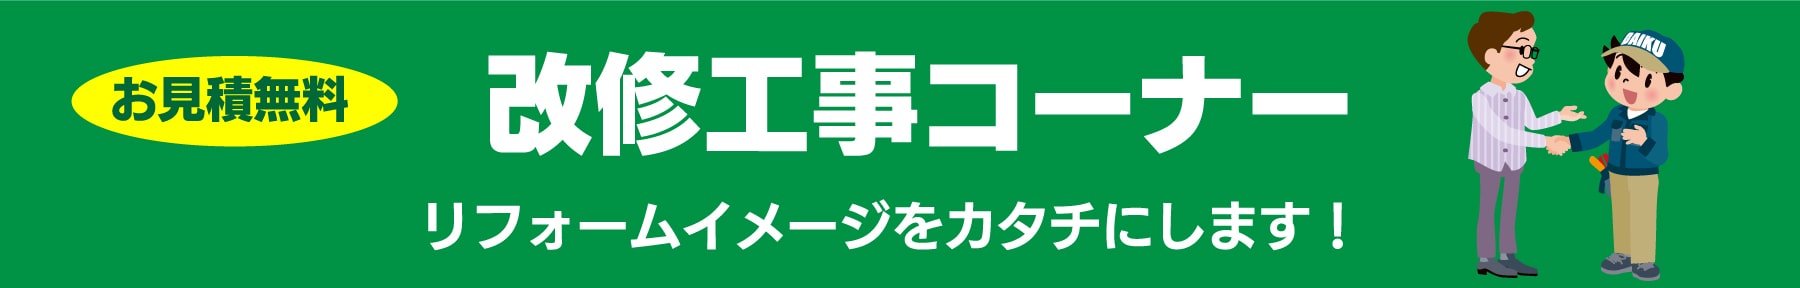 仙台のリフォーム専門店 ダイクショールーム 改修工事コーナー